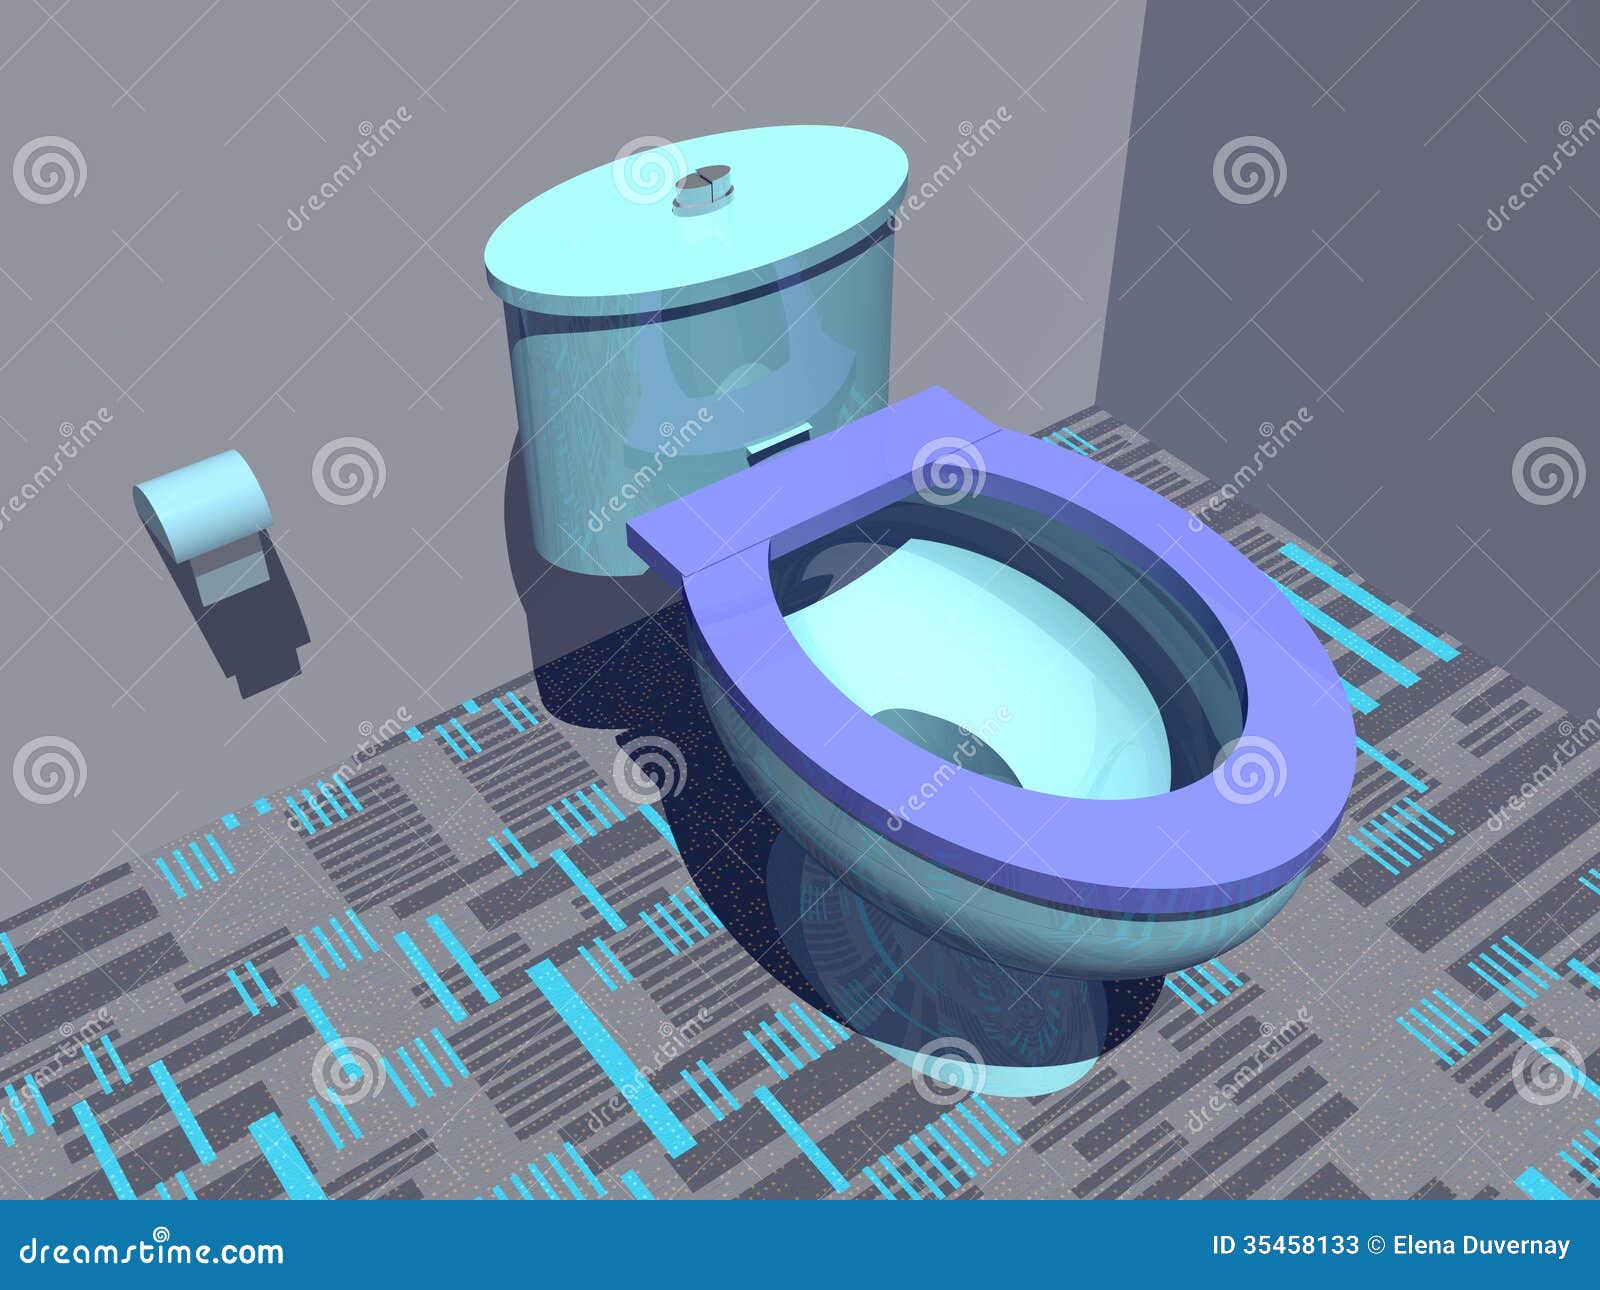 3,539 Toilet Flush Button Images, Stock Photos, 3D objects, & Vectors